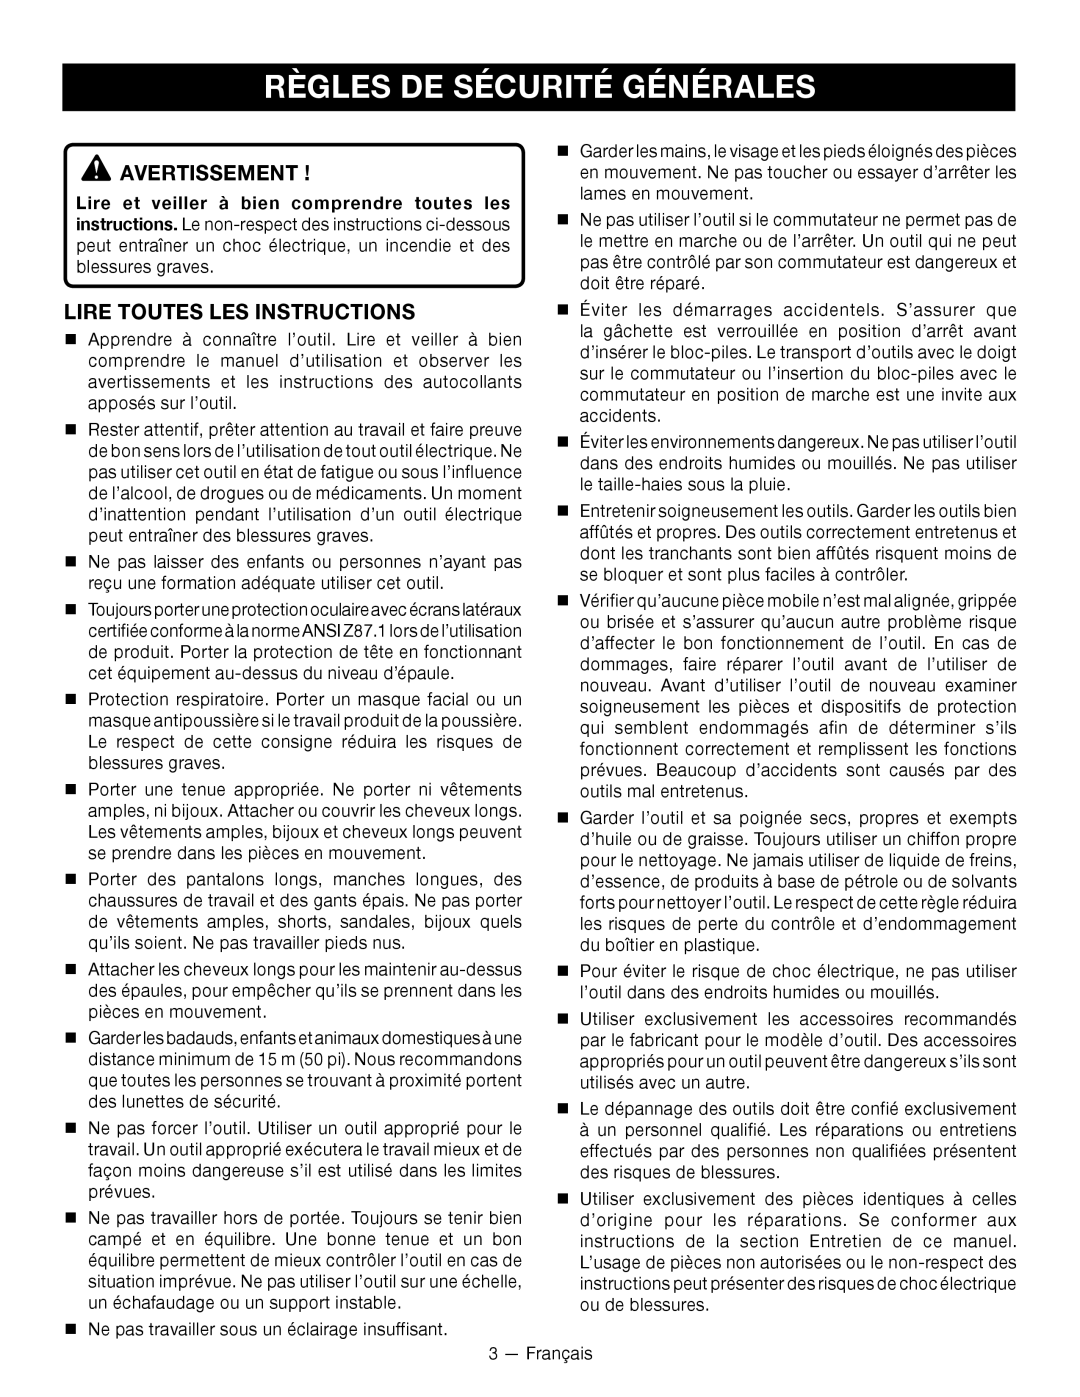 Ryobi RY24600 manuel dutilisation Règles De Sécurité Générales, Avertissement , Lire Toutes Les Instructions 